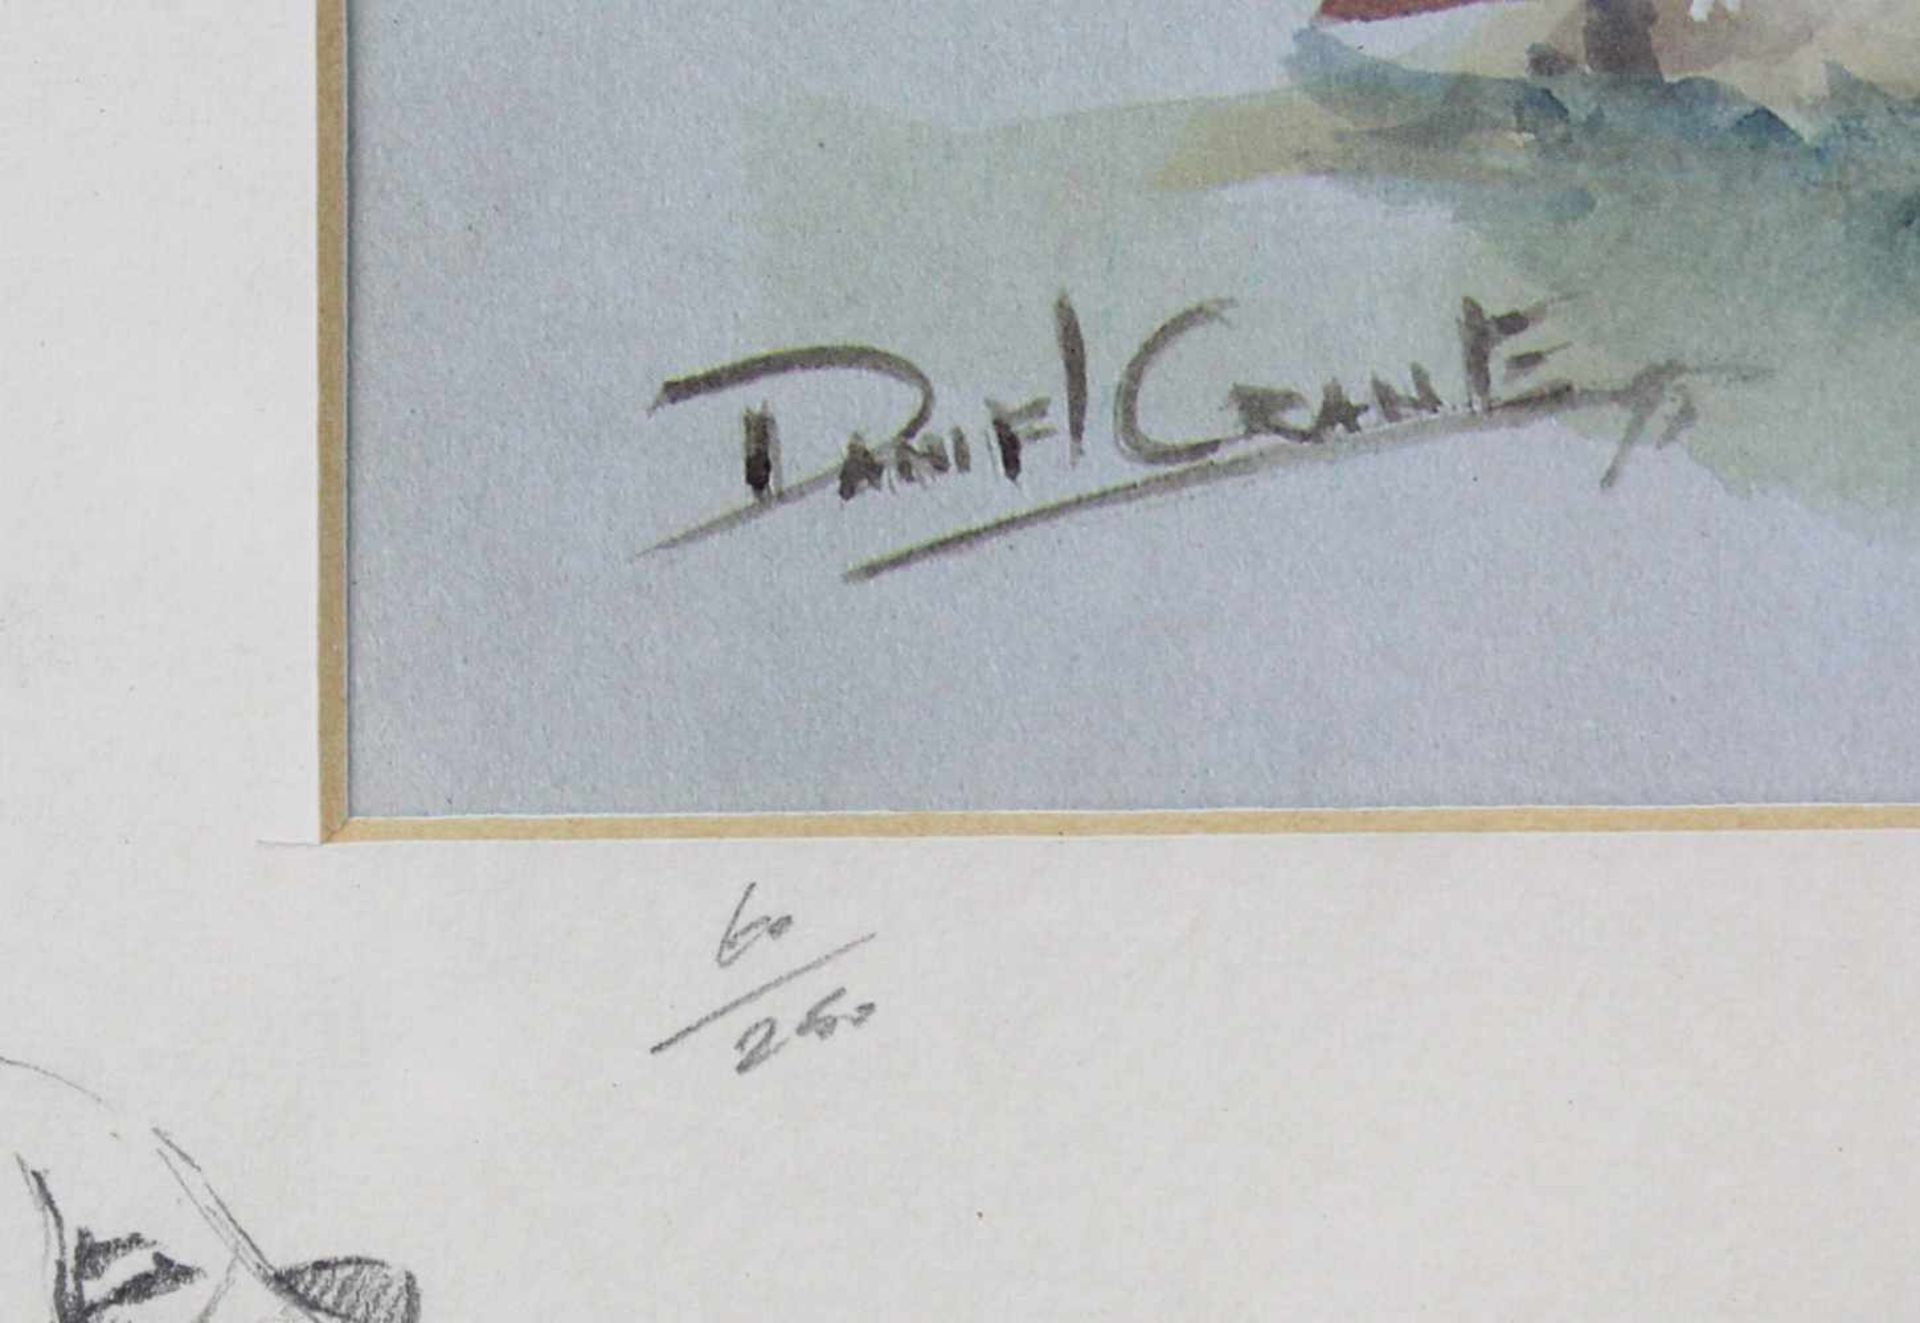 3 Drucke. Davon ein Druck mit signierter Zeichnung von Daniel CRANE (1969-). Bis 40 cm x 50 cm. - Bild 14 aus 17